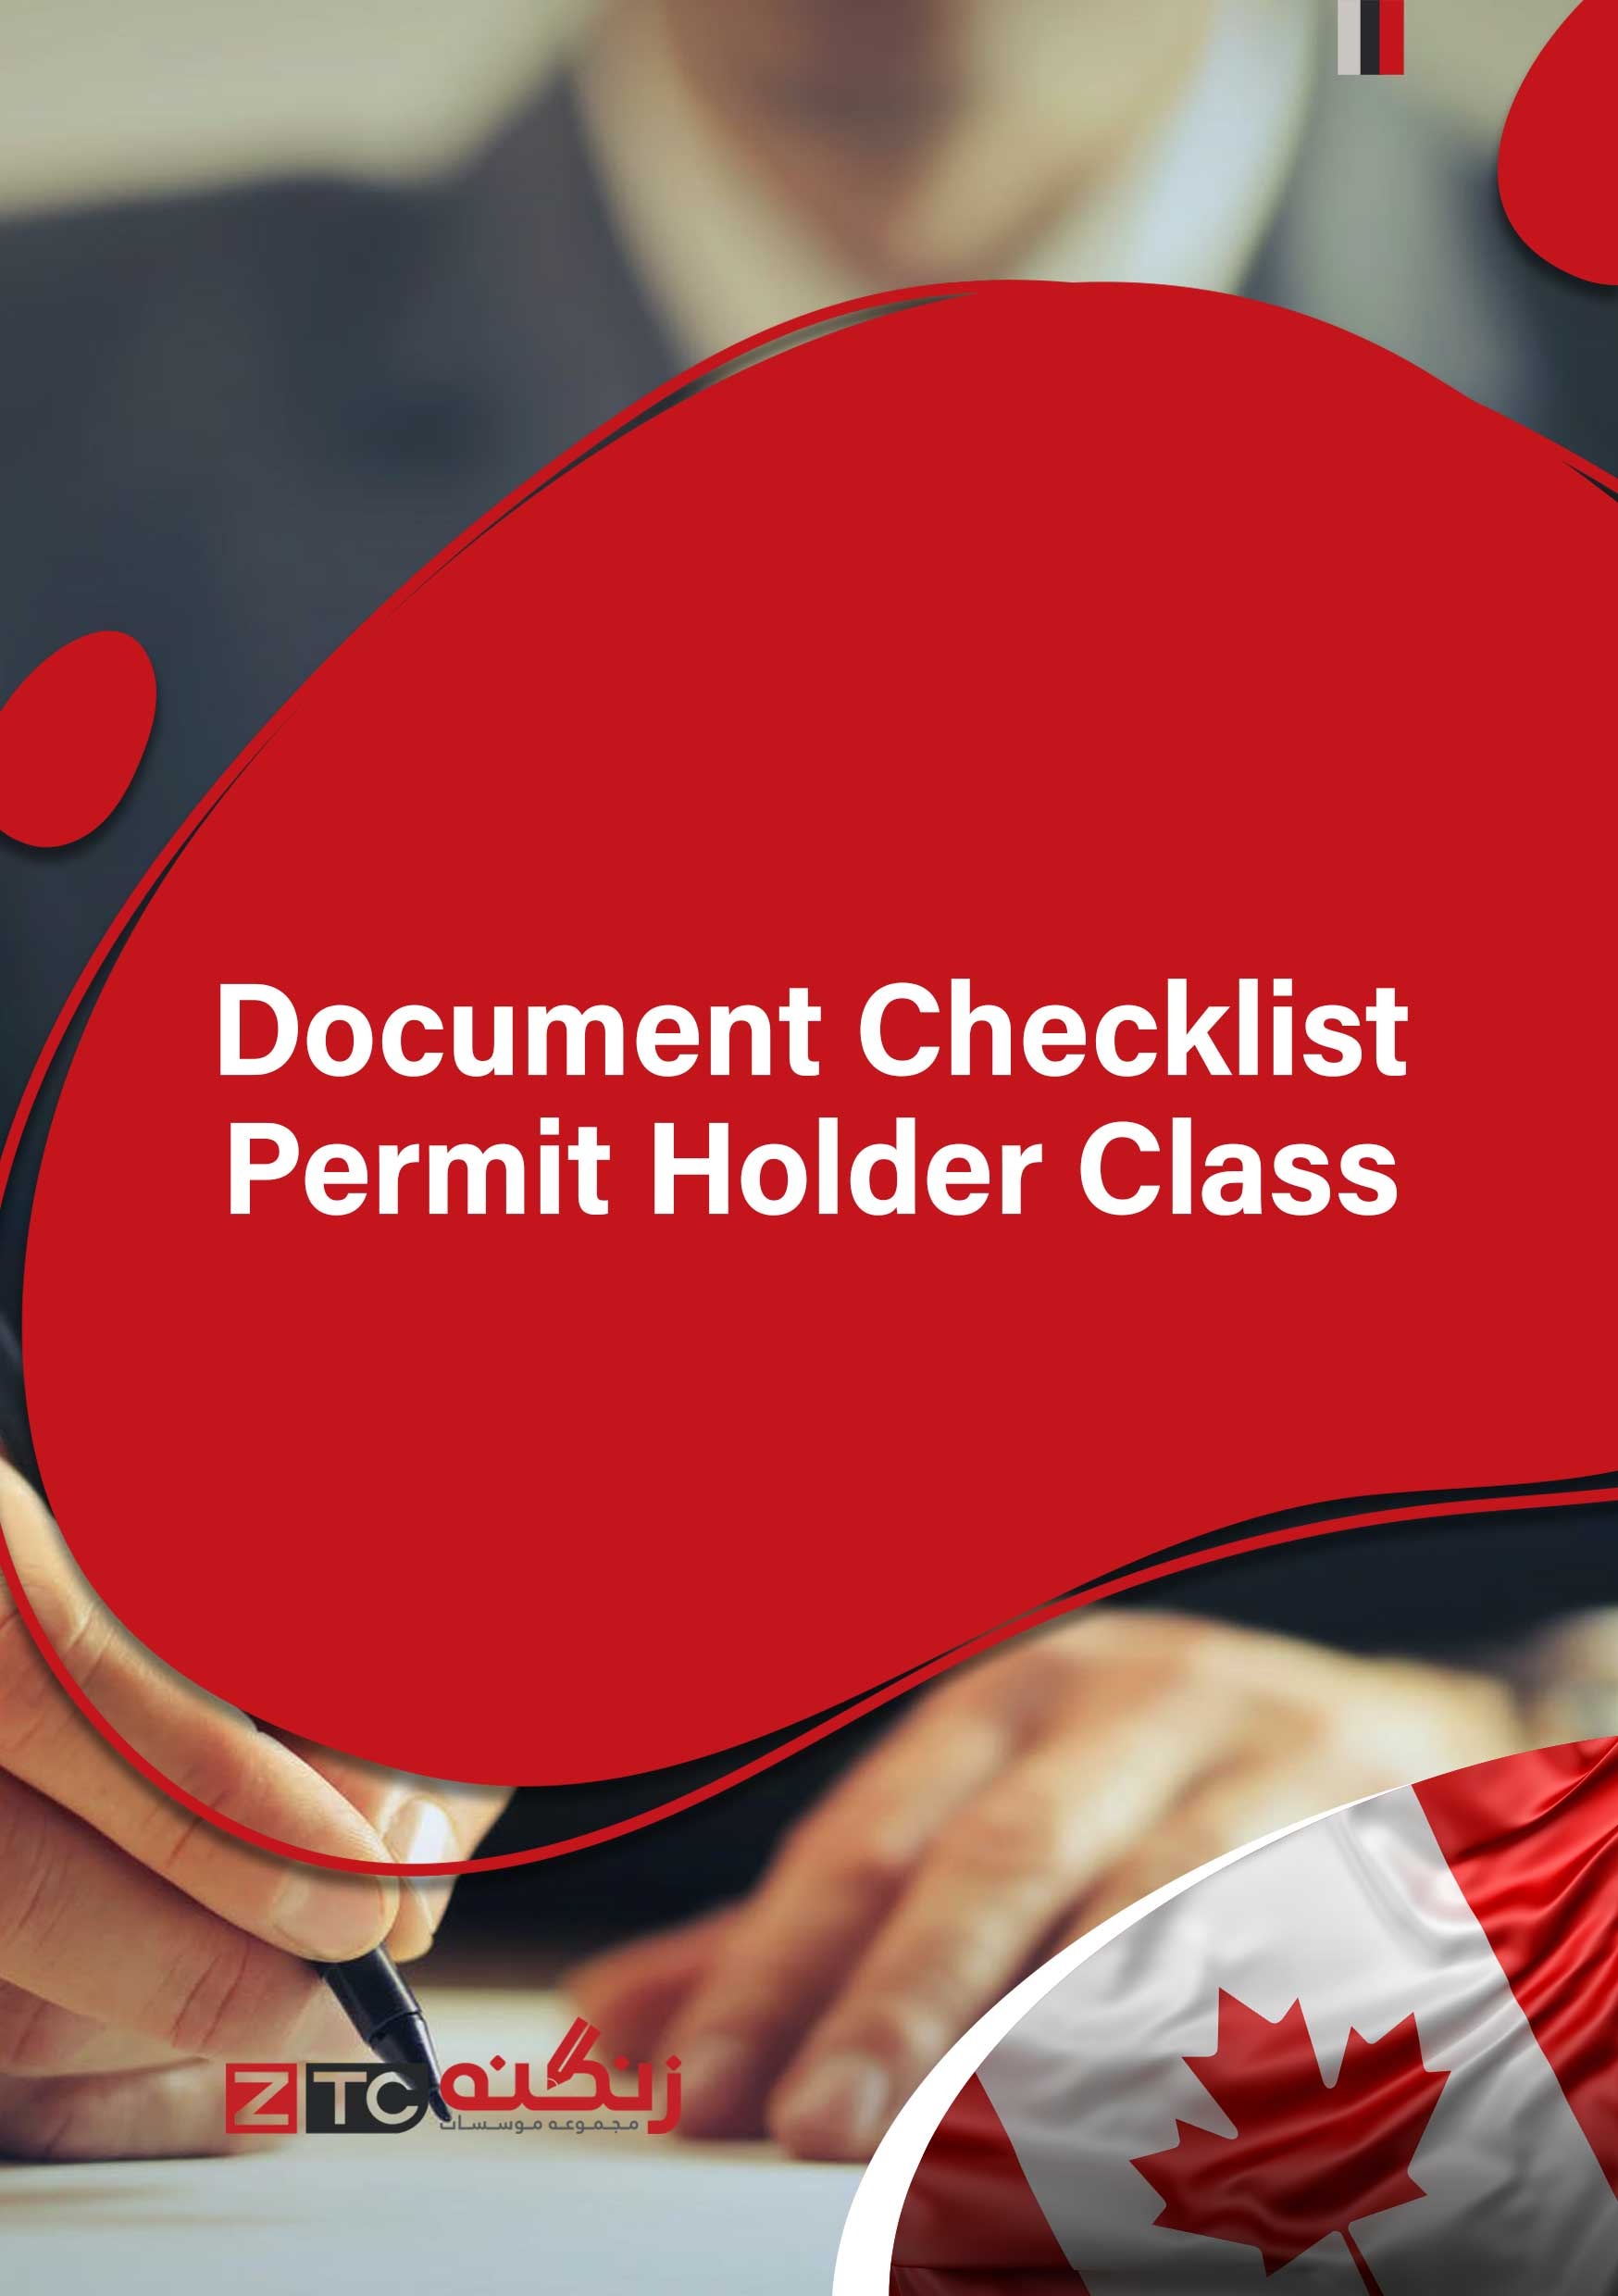 Document Checklist – Permit Holder Class